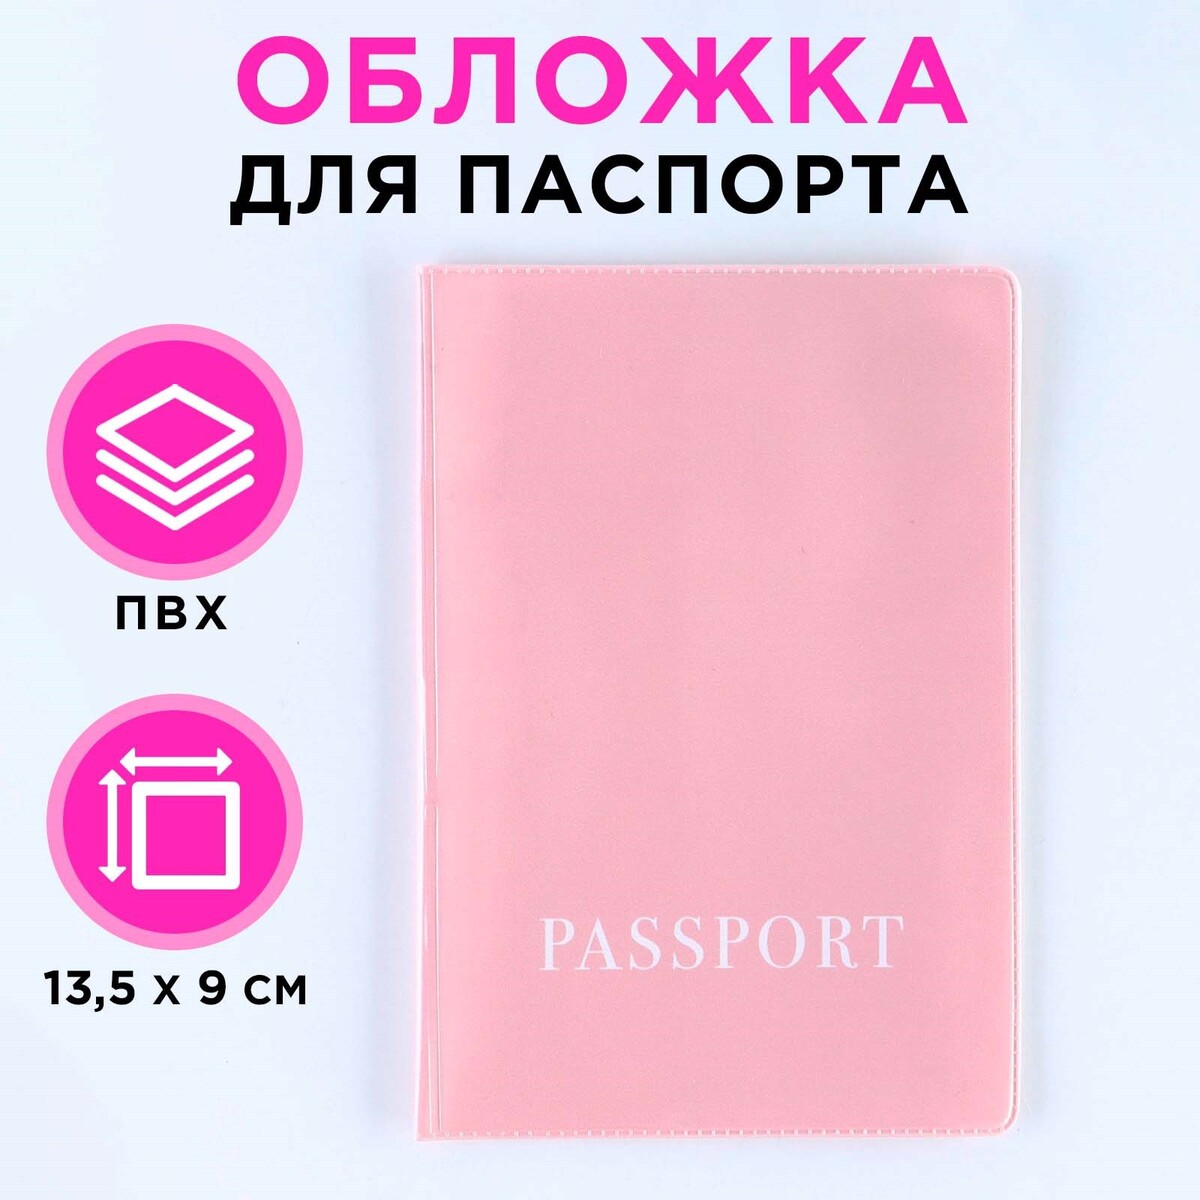 Обложка для паспорта, пвх, оттенок пыльная роза костюм трикотажный эйвери пыльная роза